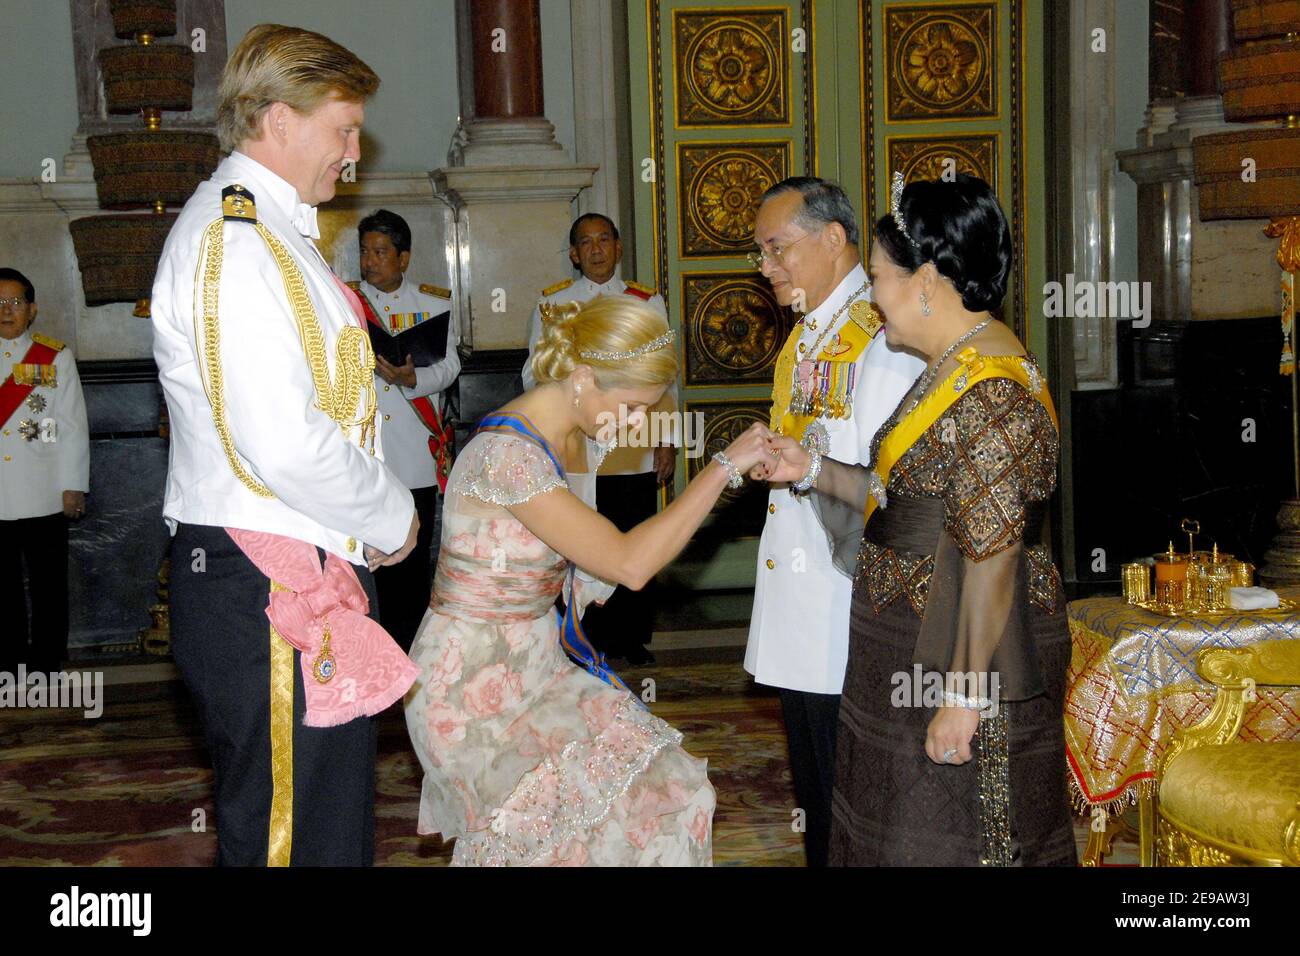 Il re tailandese Bhumibol Adulyadej e la regina Sirikit (R) ricevono il principe ereditario olandese Willem Alexander e la principessa Maxima dei Paesi Bassi alla Sala del trono di Borommaratchasathit Maholan per il banchetto reale in onore dei monarchi stranieri in visita a Bangkok, 13 giugno 2006. I reali provenienti da tutta l'Asia, l'Europa, il Medio Oriente e l'Africa si unirono al re della Thailandia in un banchetto di stato per celebrare il sessantesimo anno sul trono come monarca più longevo del mondo. Foto di Patrick Durand/Pool/ABACAPRESS.COM Foto Stock